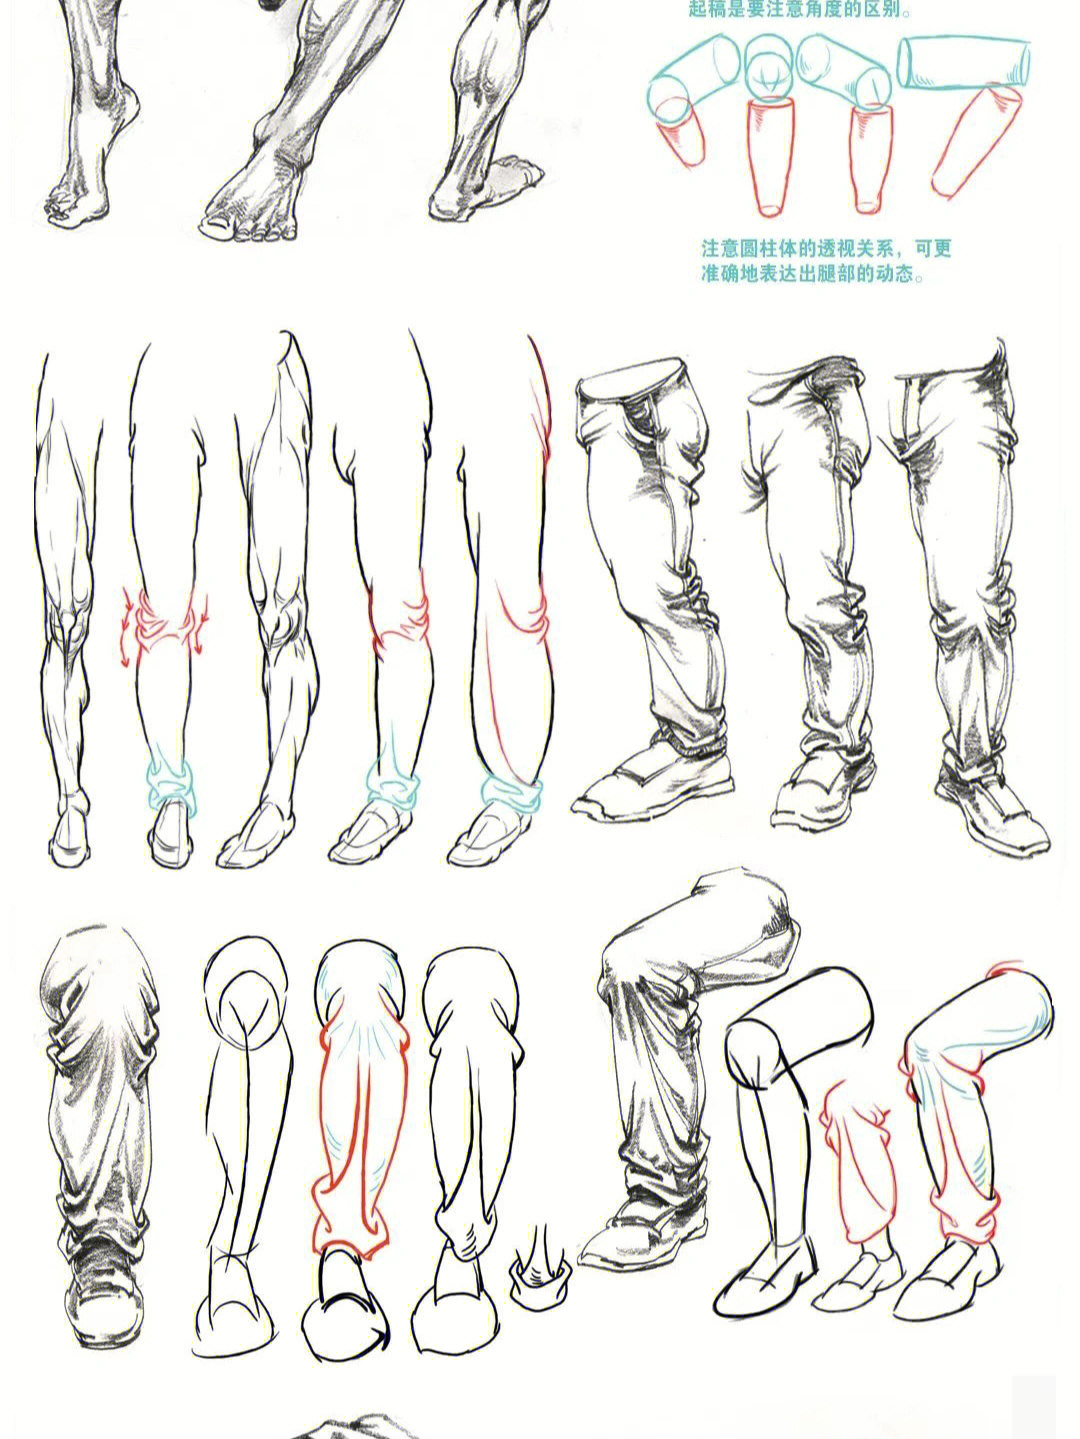 速写人物腿部分类及画法分析一看就会